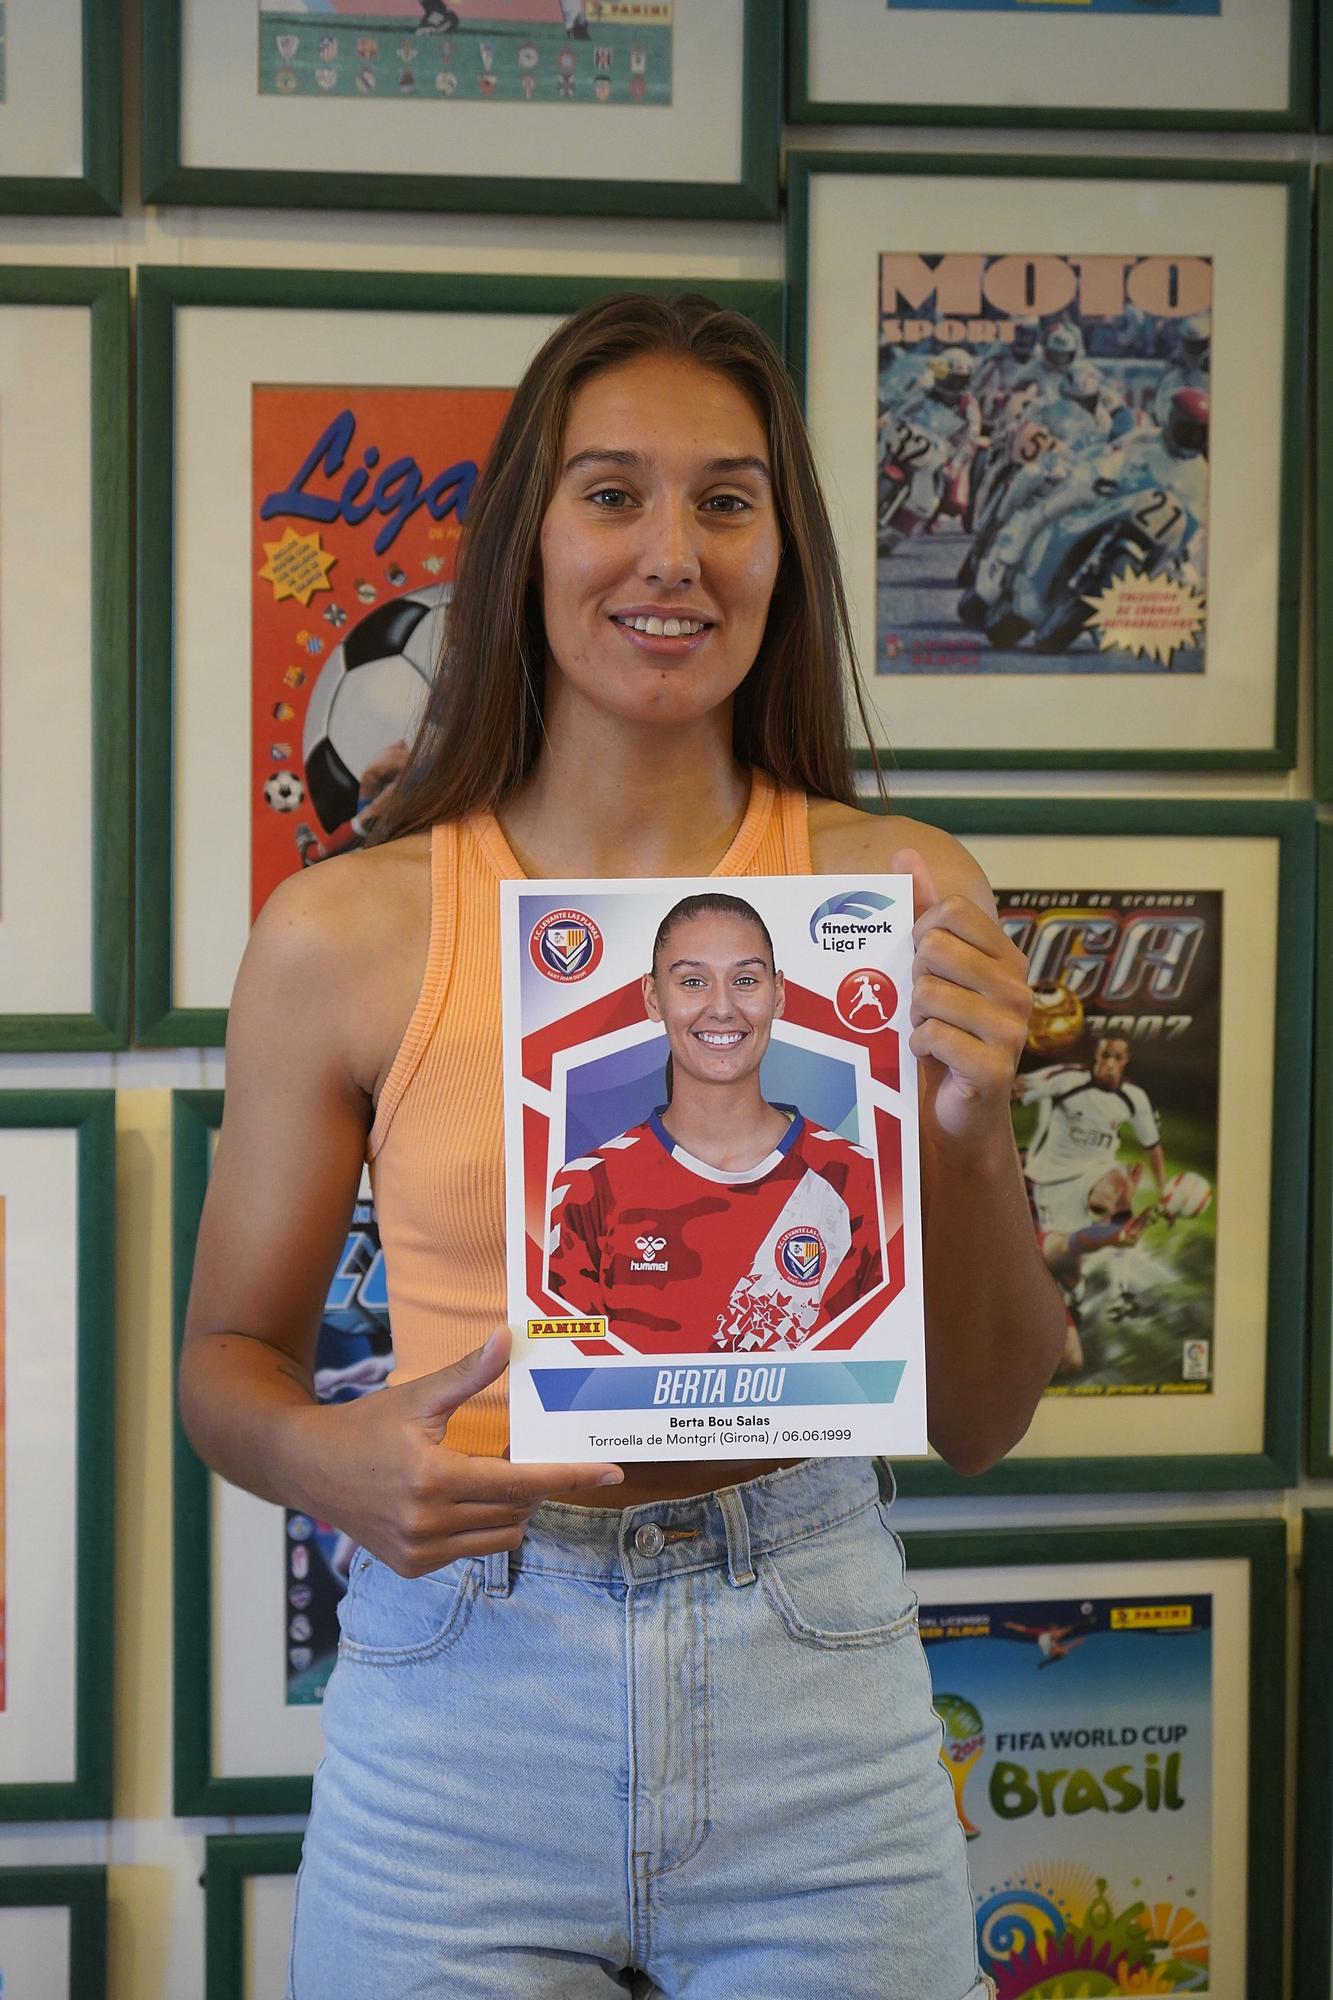 Panini entrega els dos cromos especials a les jugadores de la Lliga Femenina de Torroella